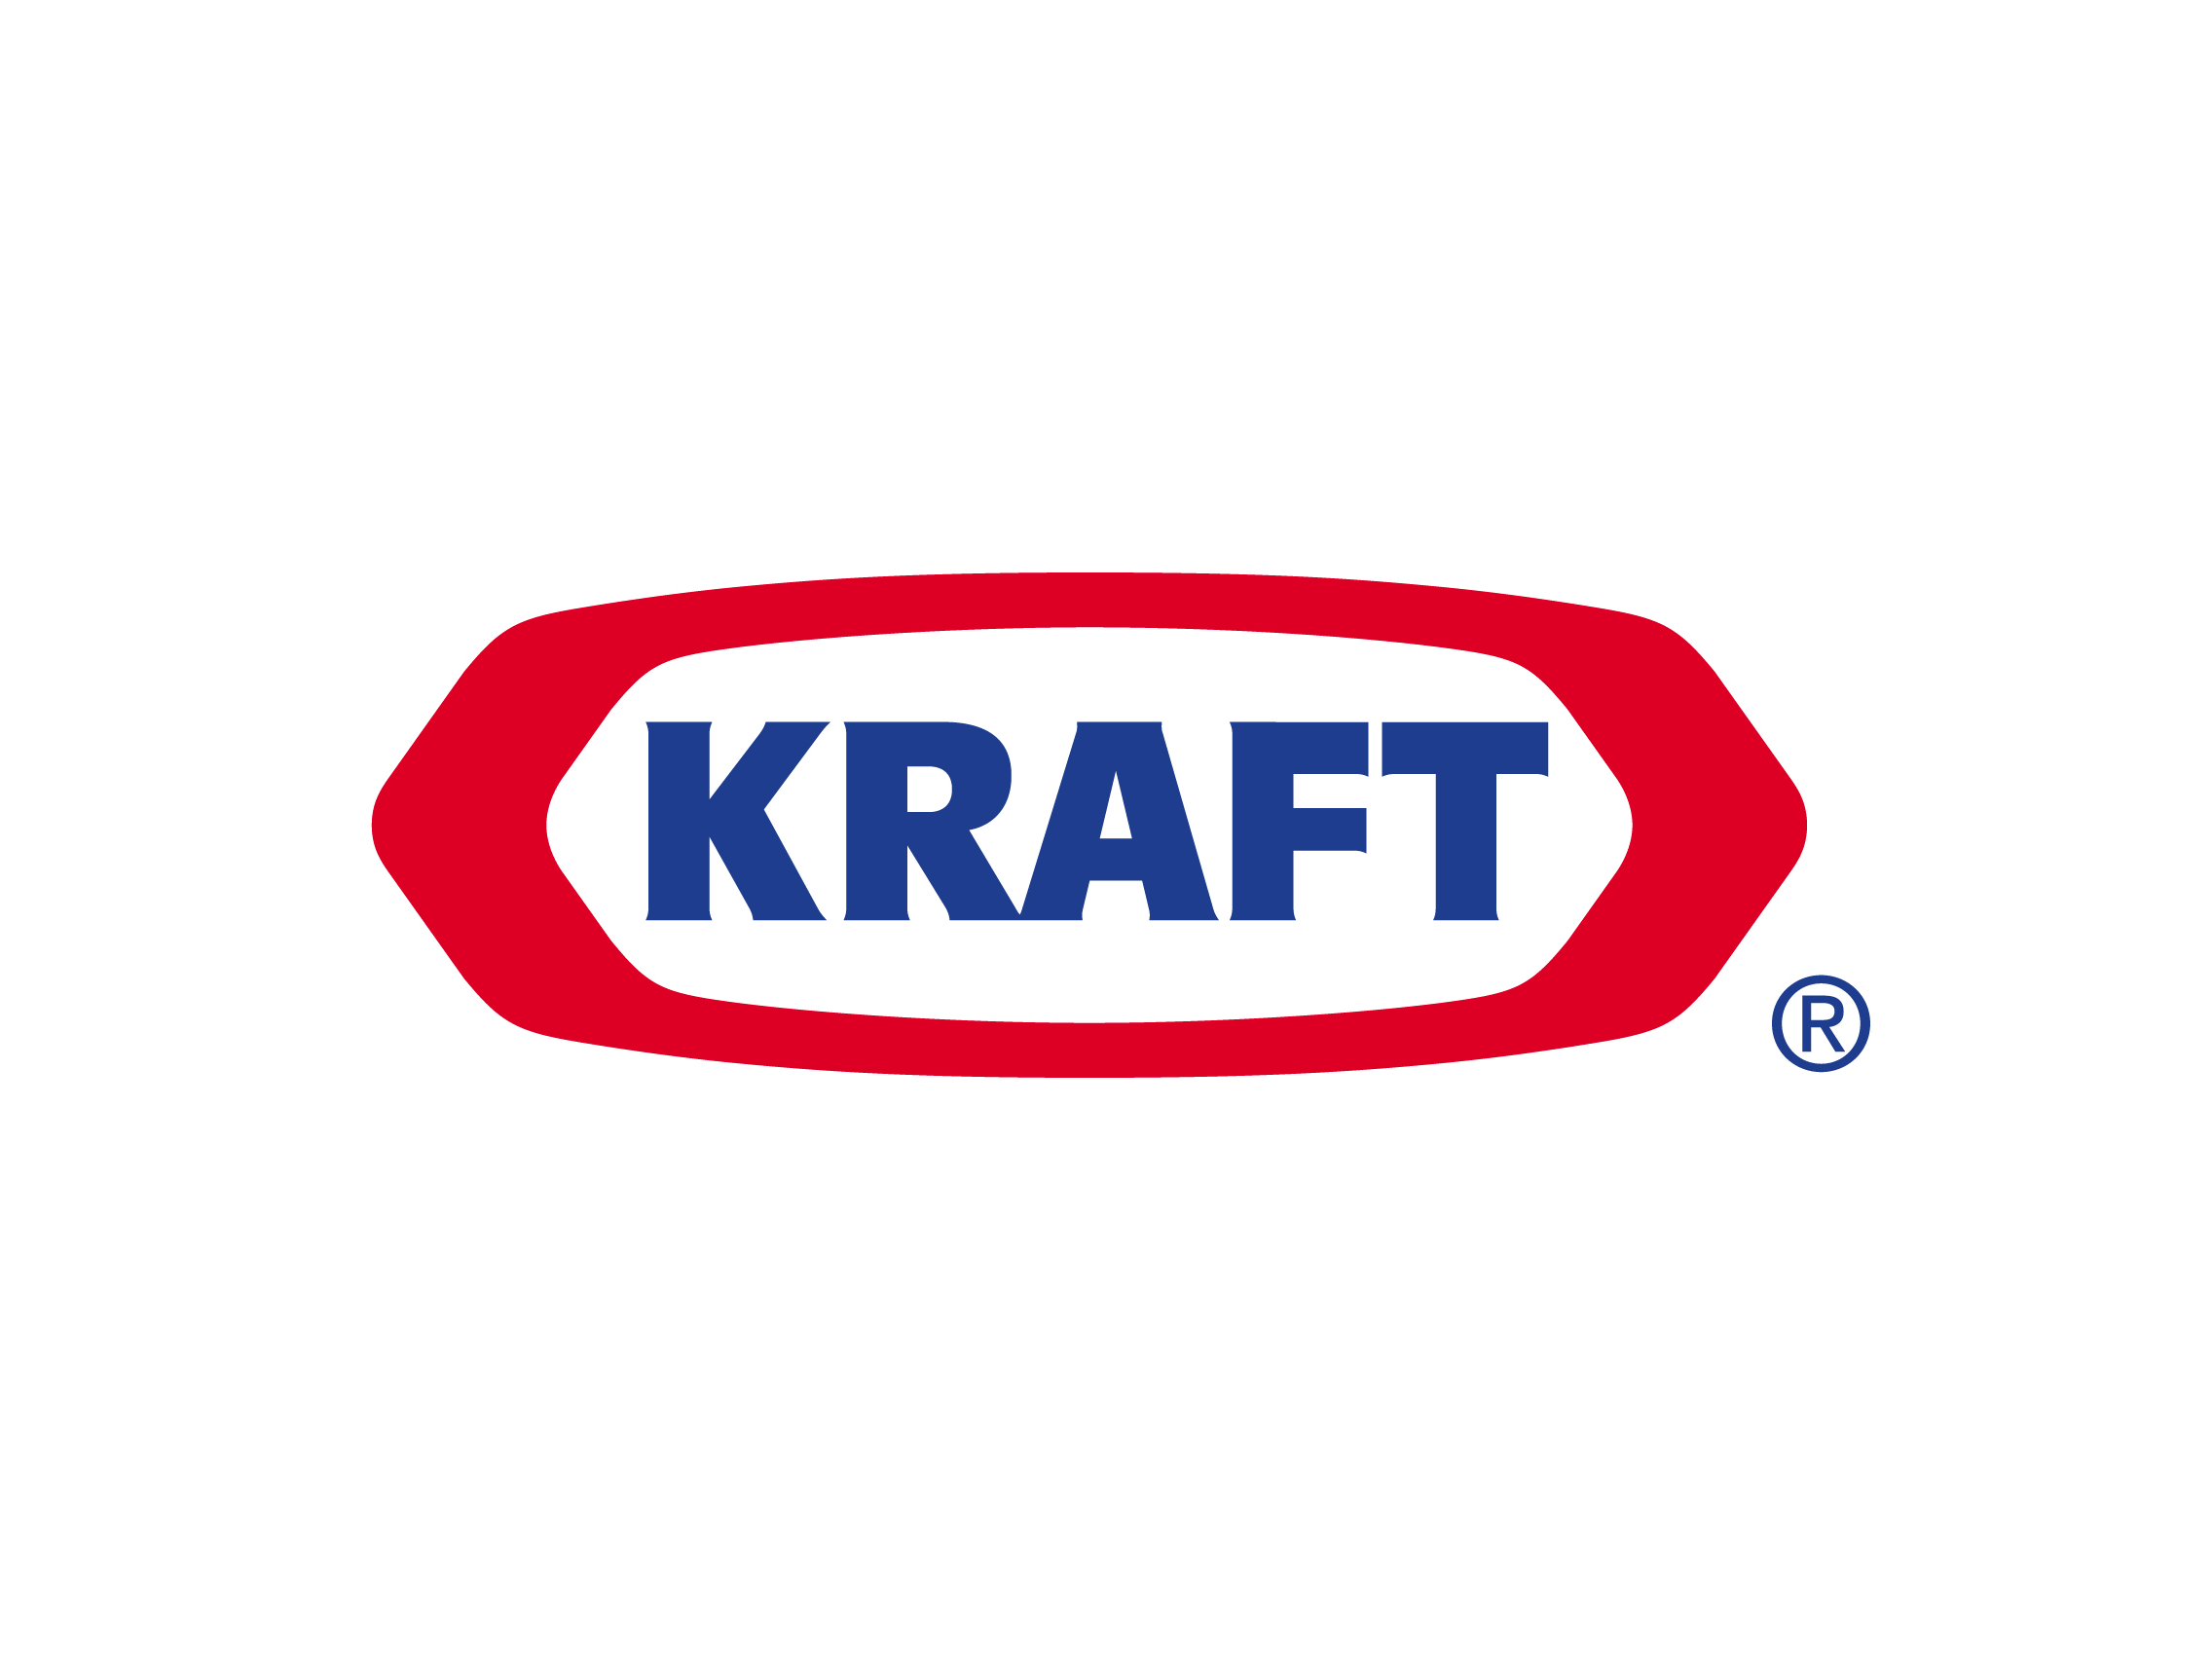 American Food Manufacturer Logo - Kraft logo | Logok